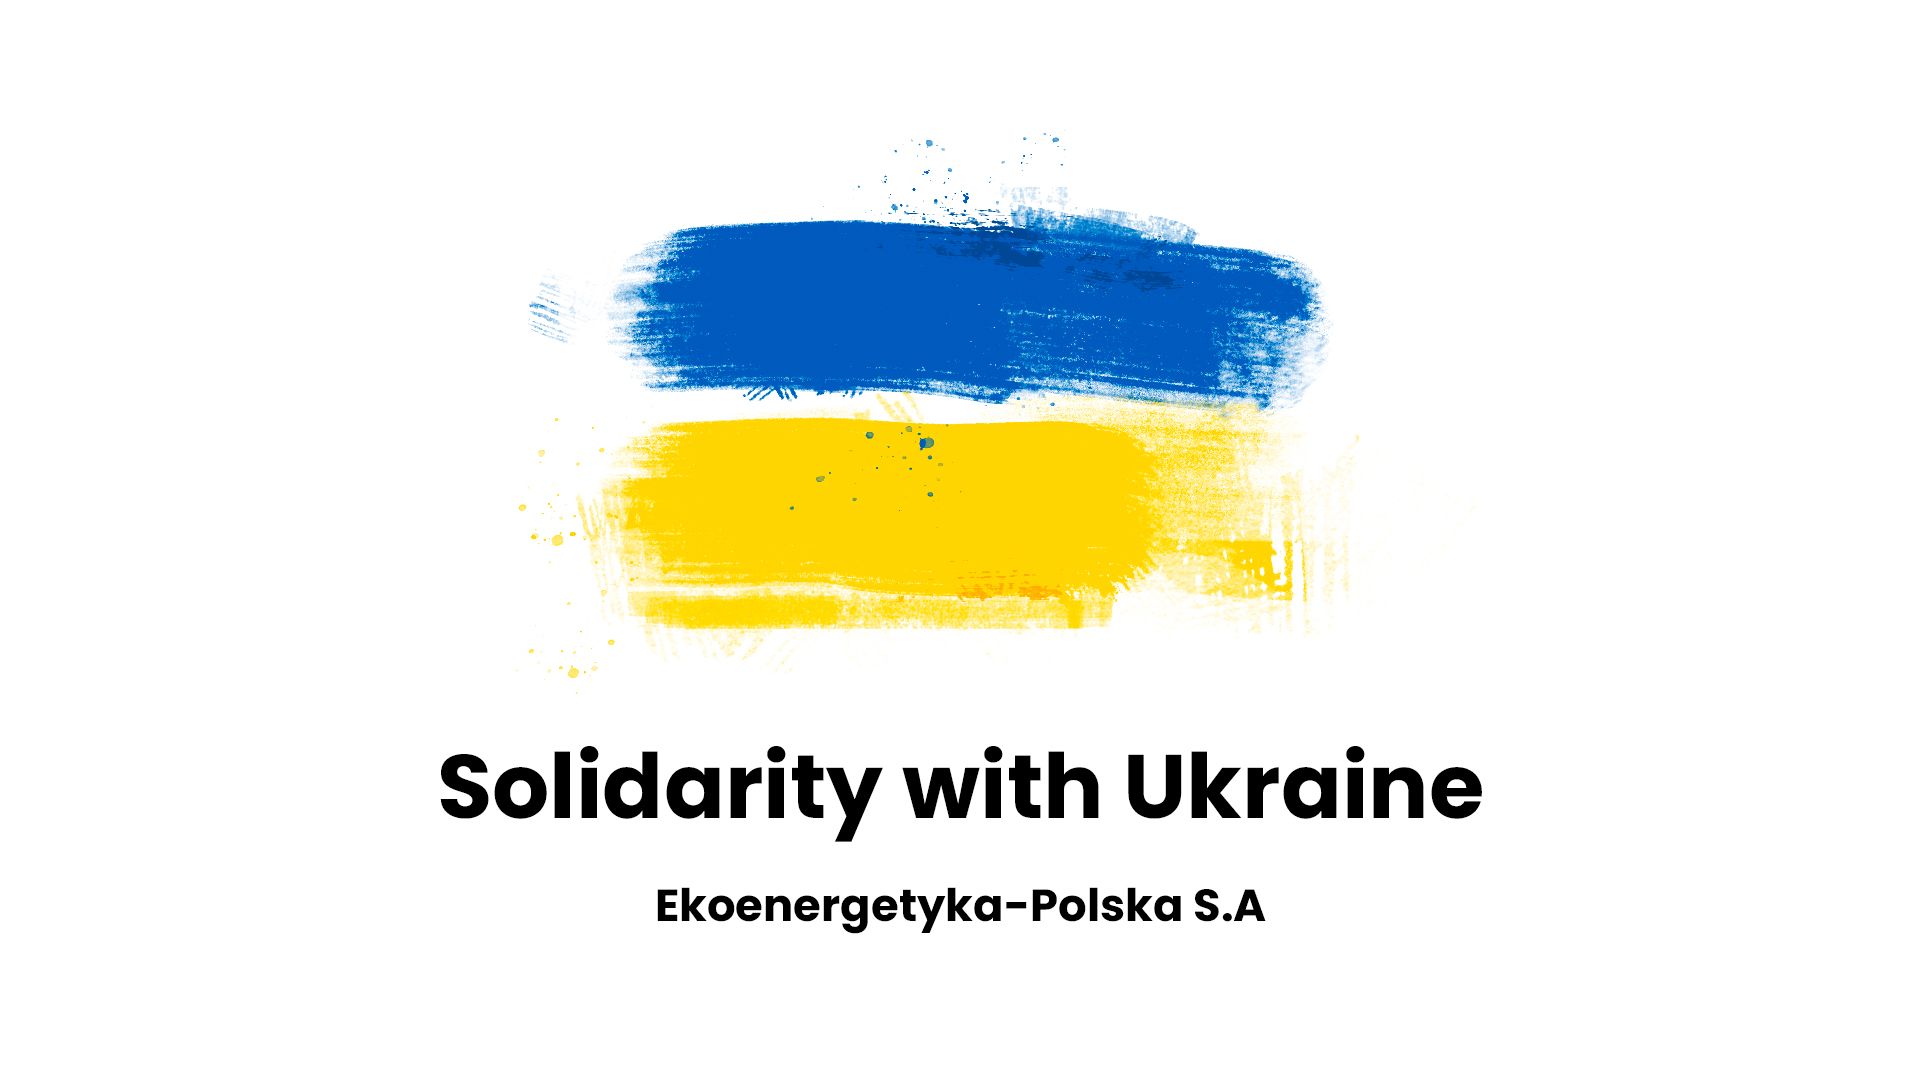 Solidarity with Ukraine, Ekoenergetyka